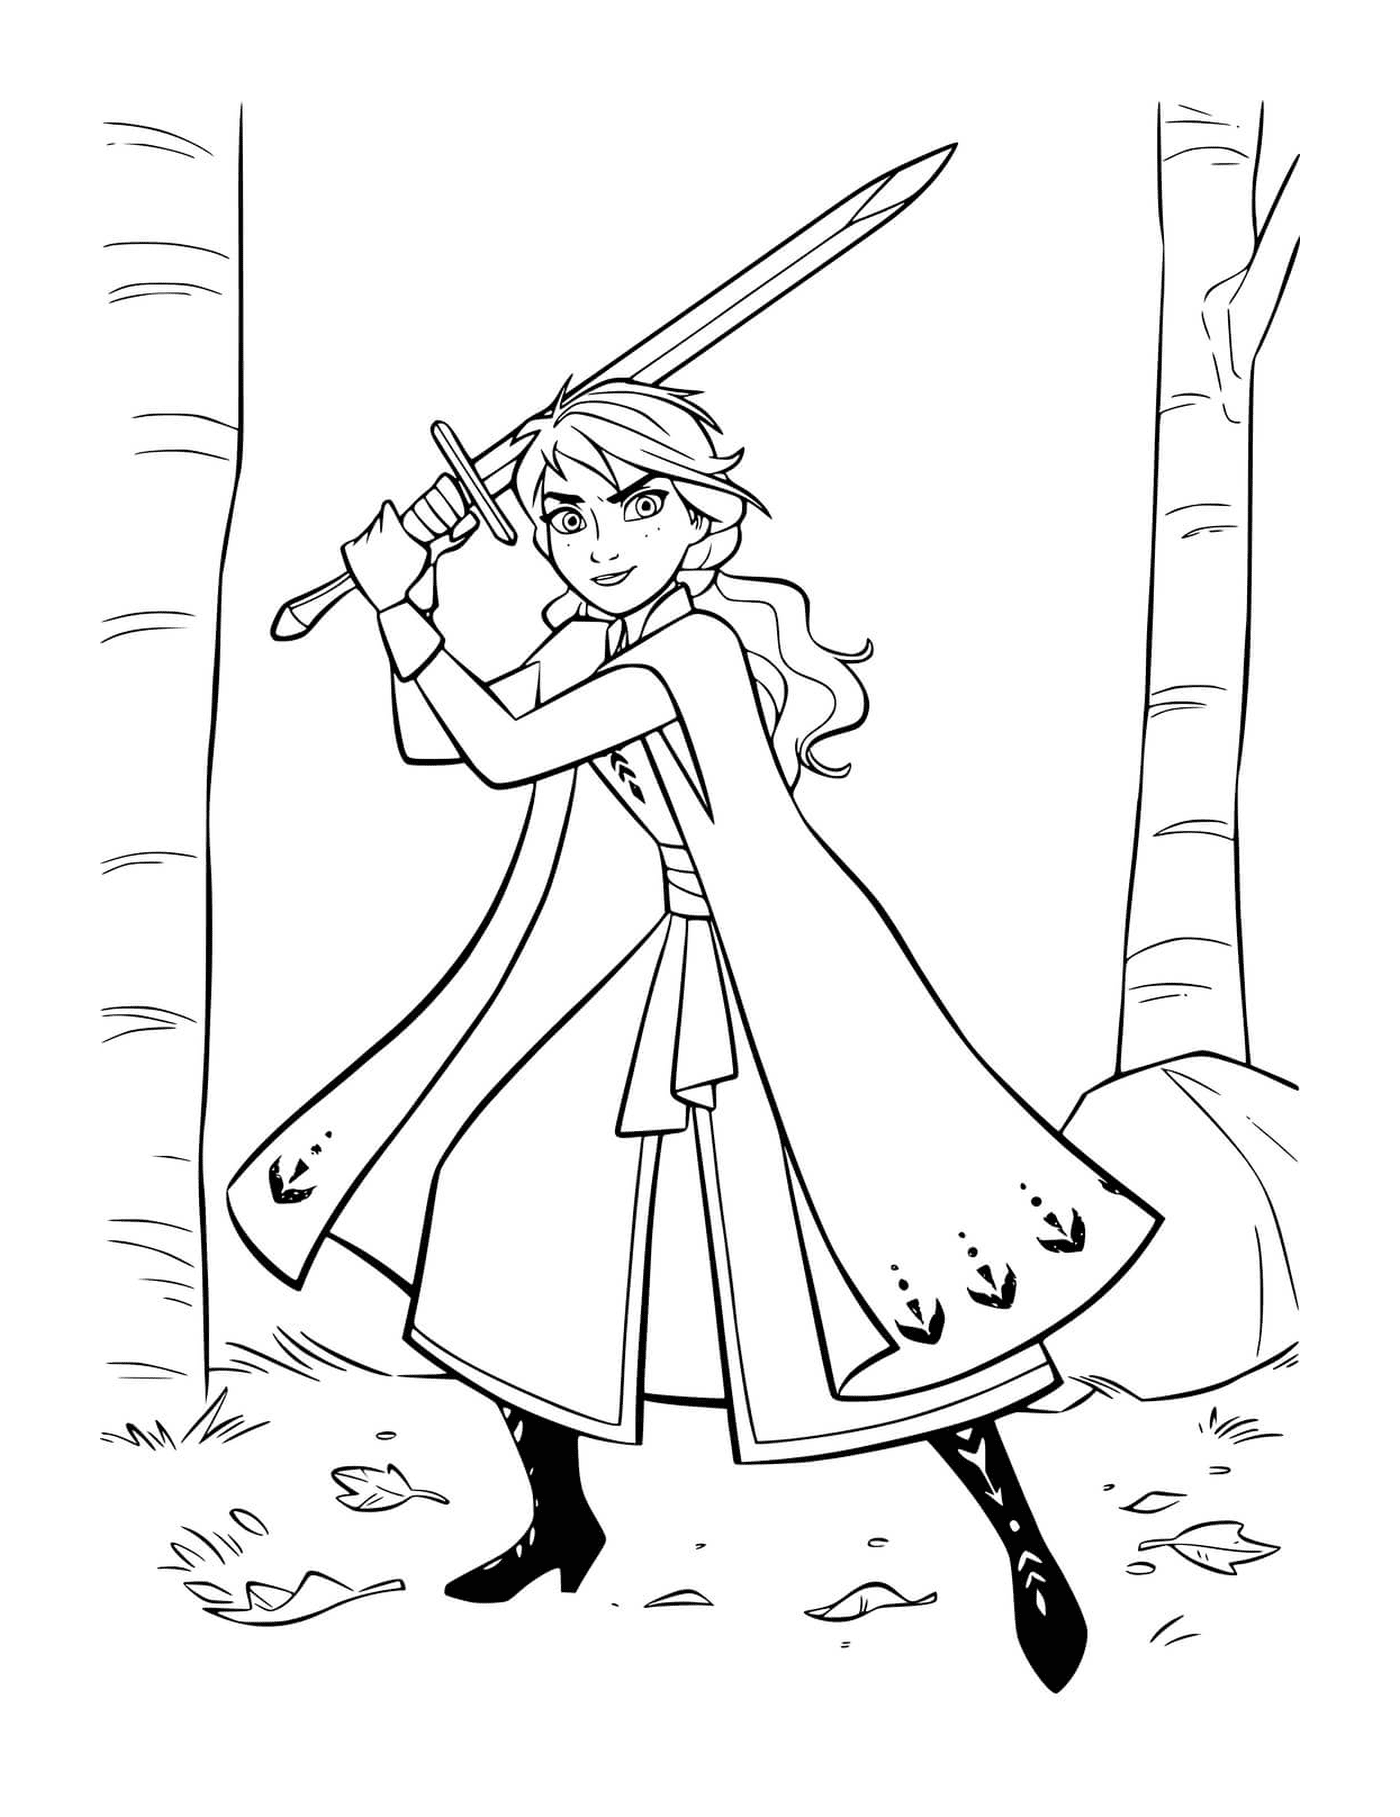  Анна защищает королевство мечом 